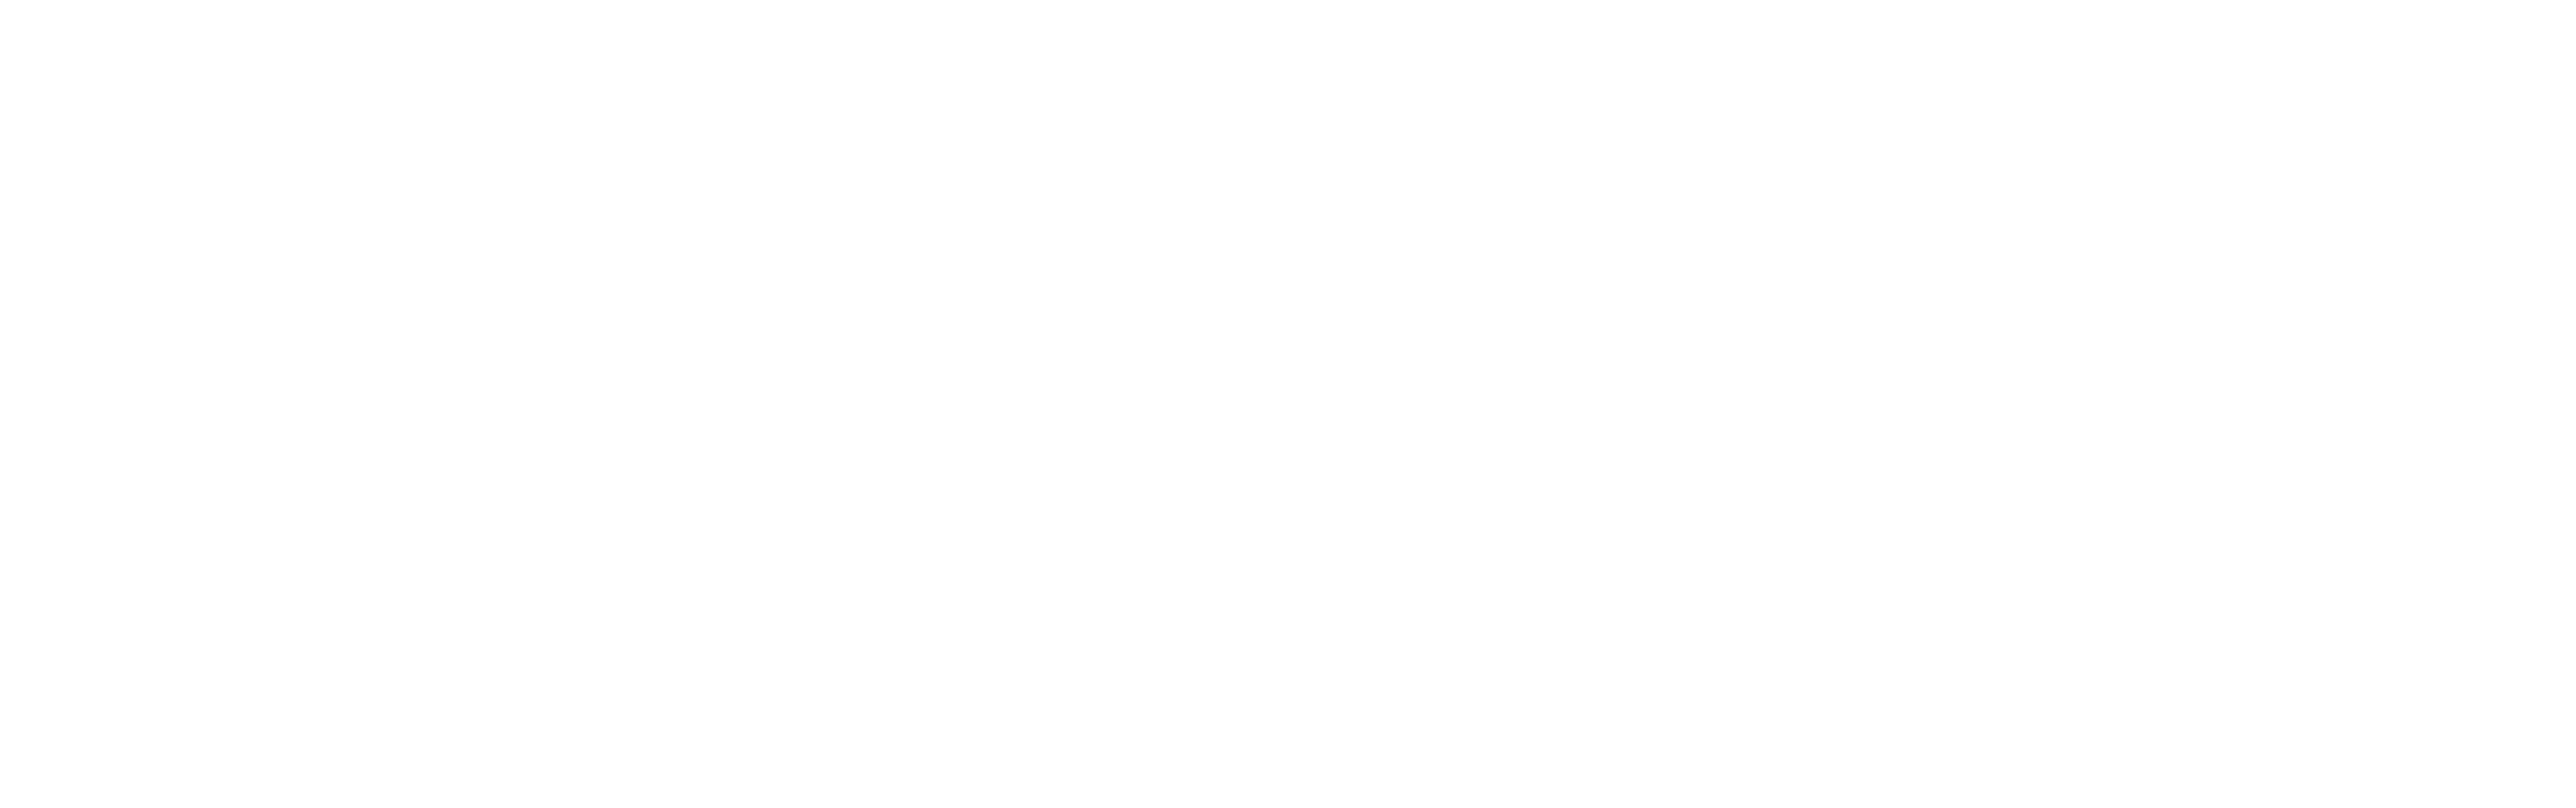 泰椰餐館 值得您品味的新泰式料理